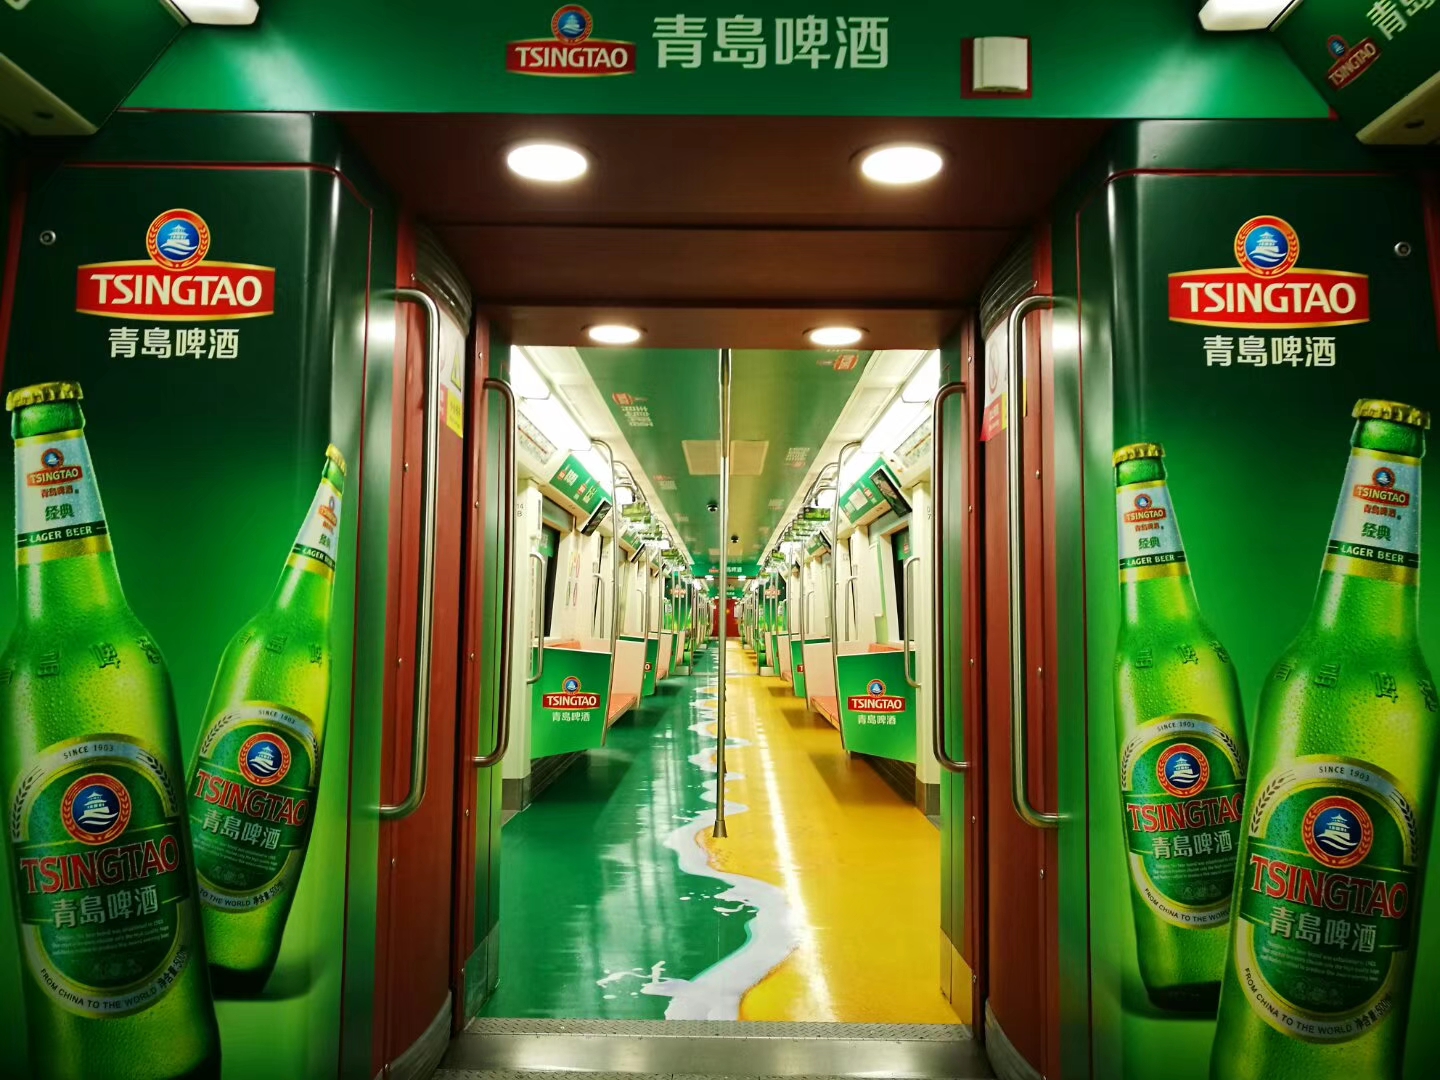 深圳地铁1号线广告如何提高关注度呢？